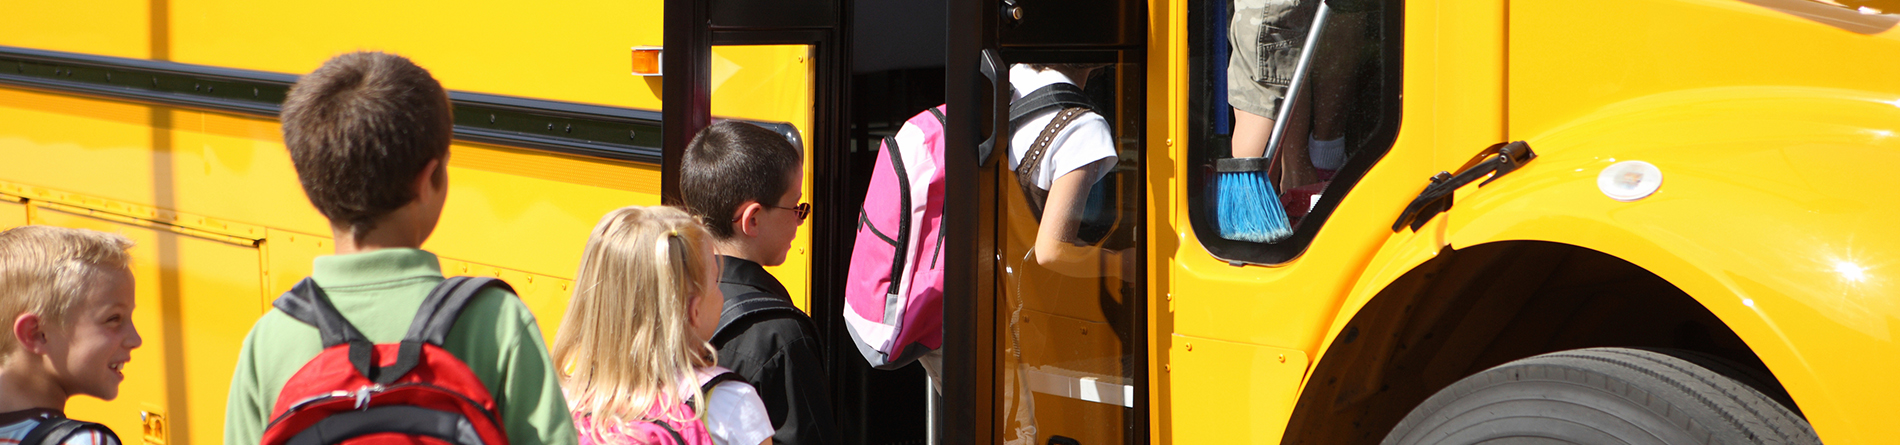 Kids boarding bus